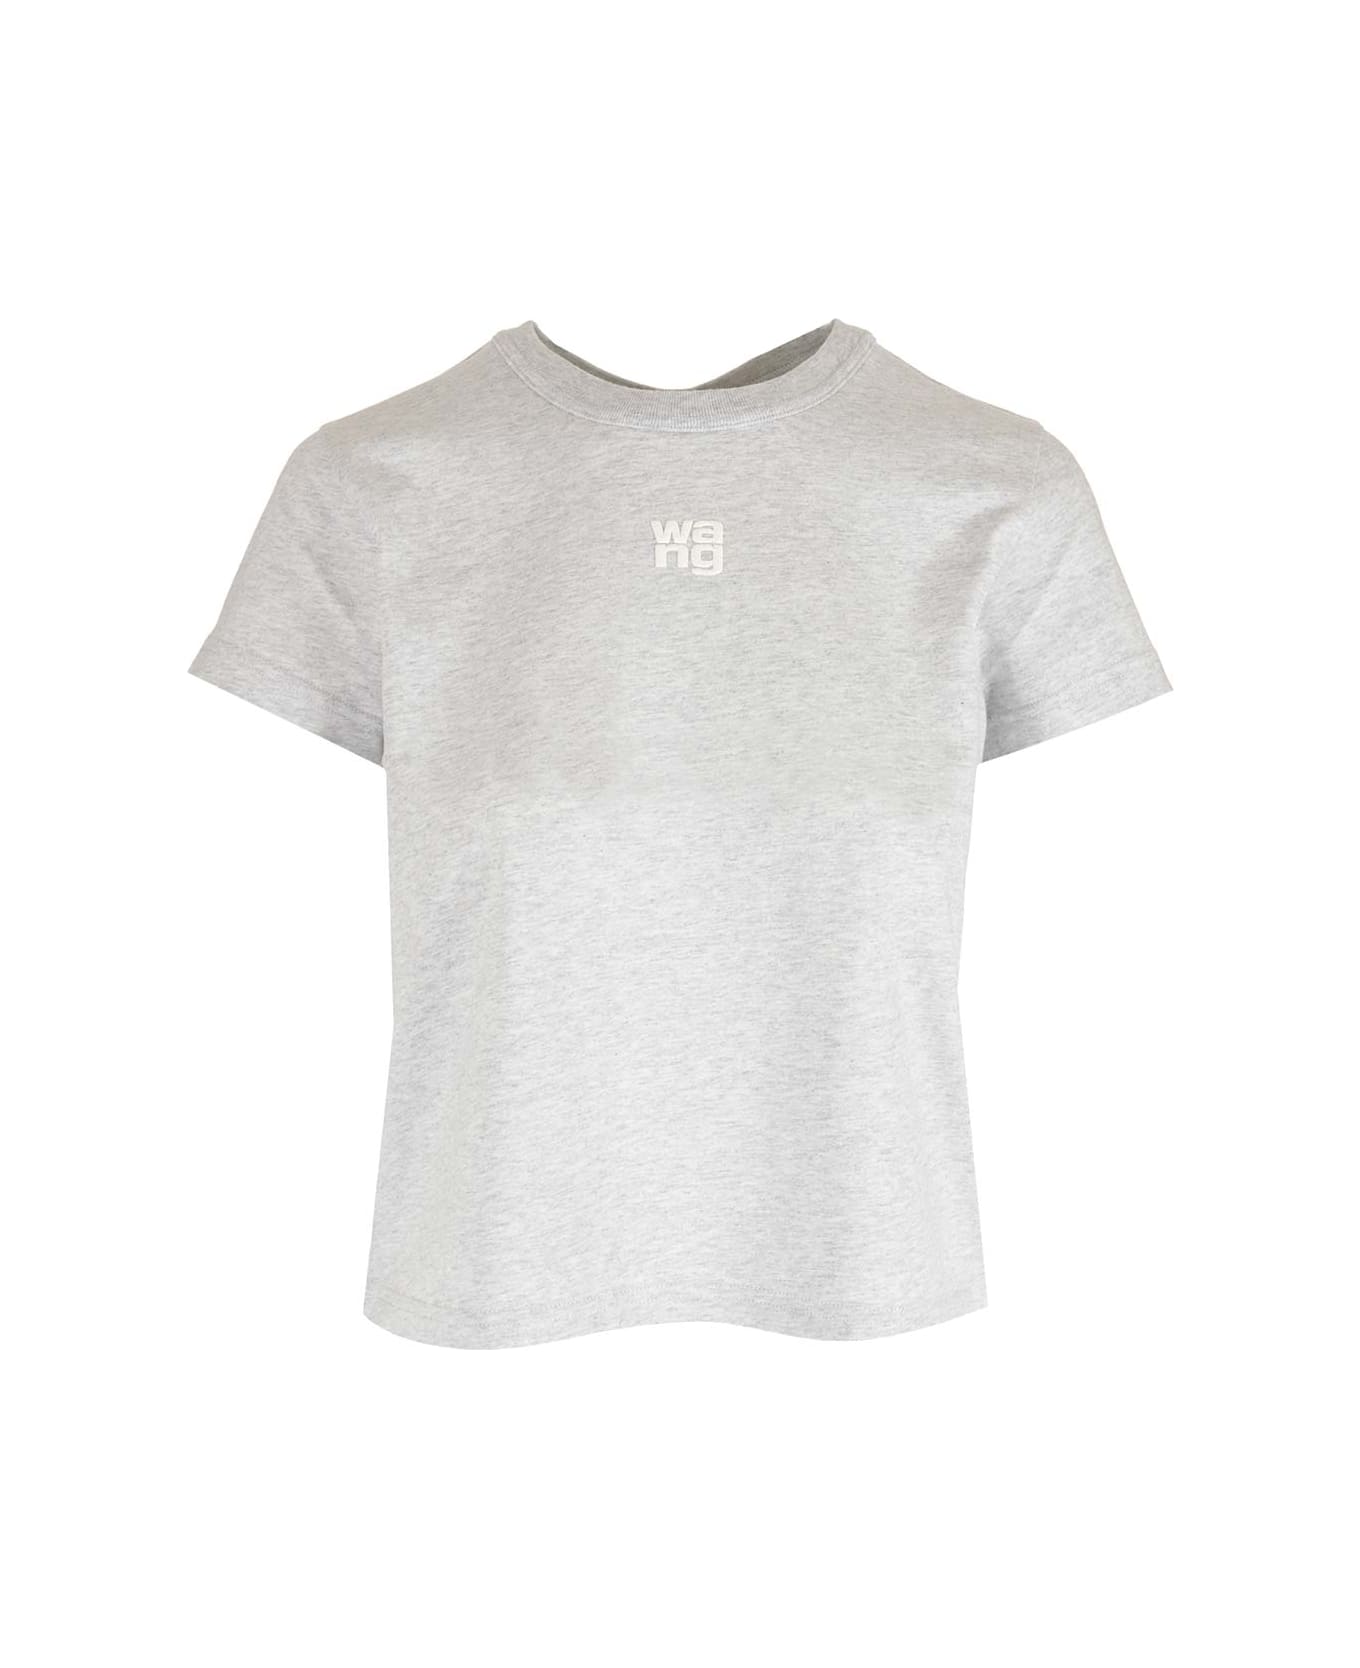 Alexander Wang 'essential' Grey T-shirt - Light Heather Grey